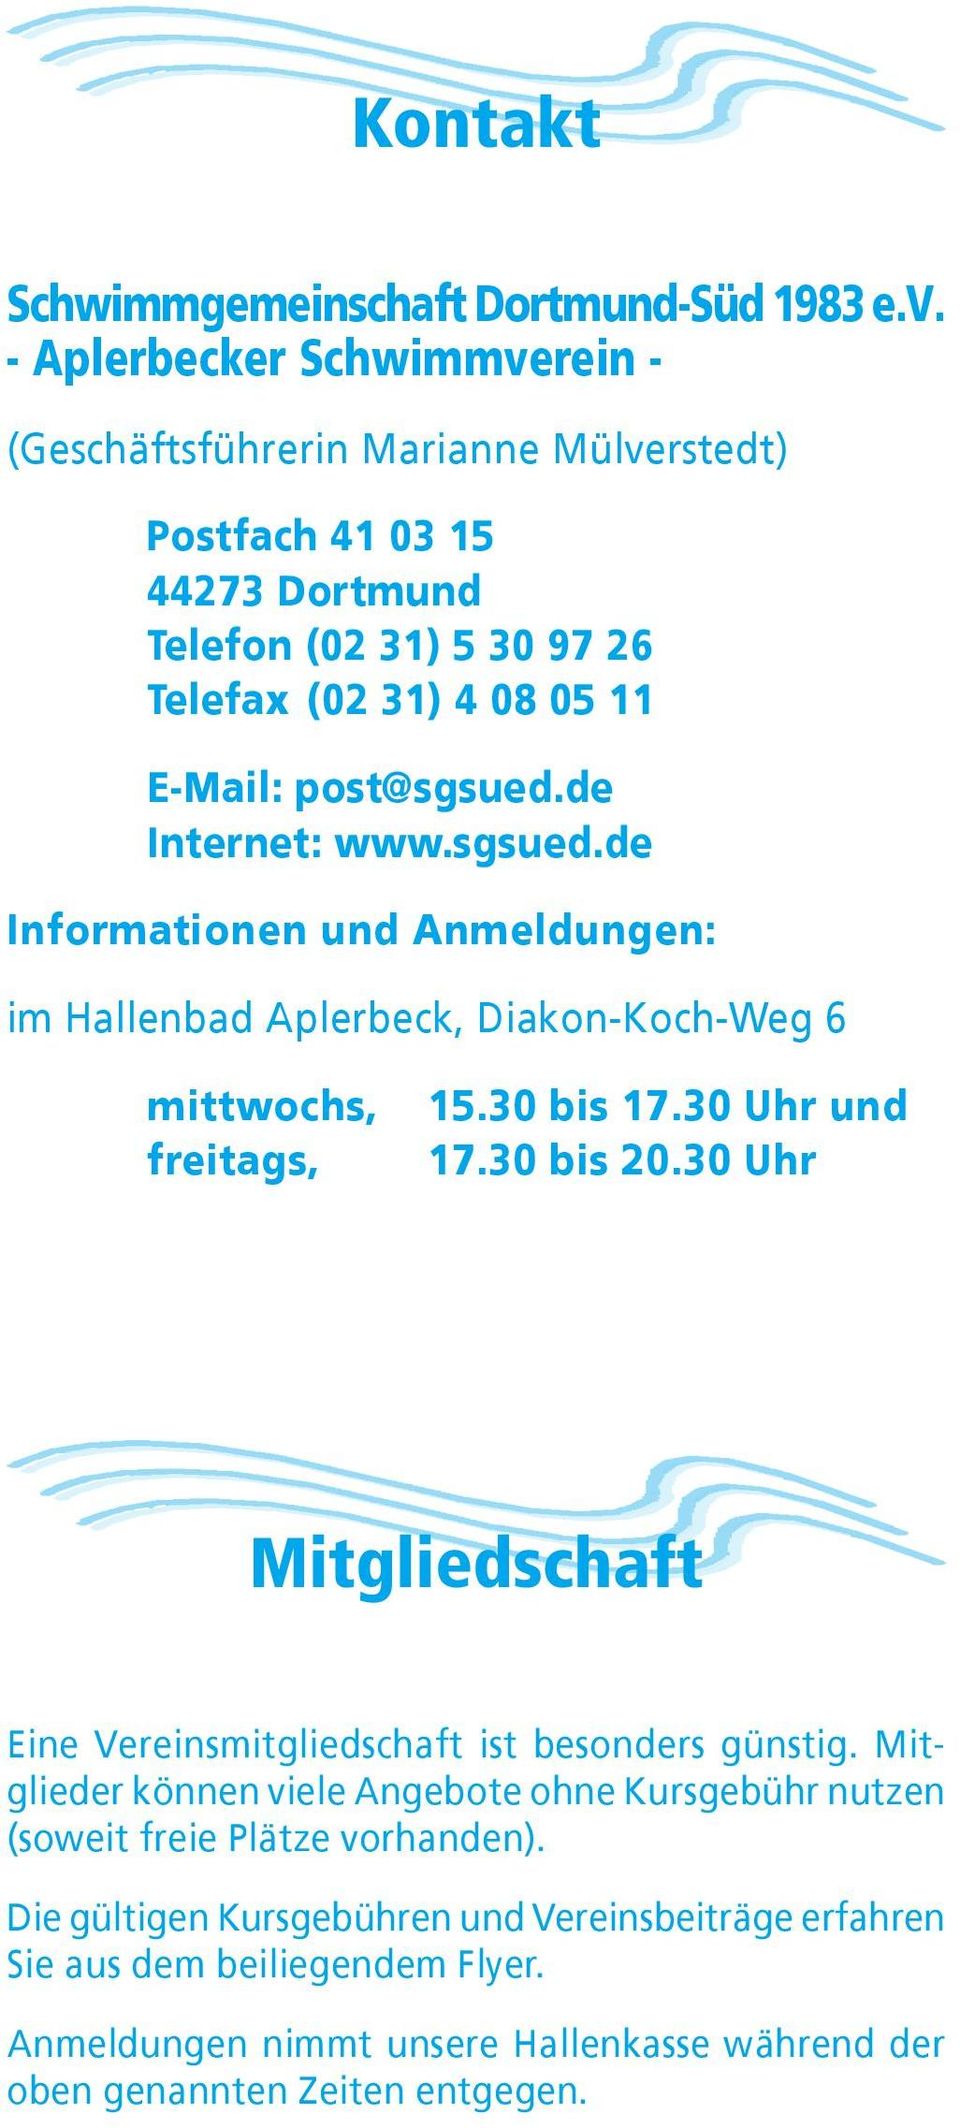 de Internet: www.sgsued.de Informationen und Anmeldungen: im Hallenbad Aplerbeck, Diakon-Koch-Weg 6 mittwochs, freitags, 15.30 bis 17.30 Uhr und 17.30 bis 20.